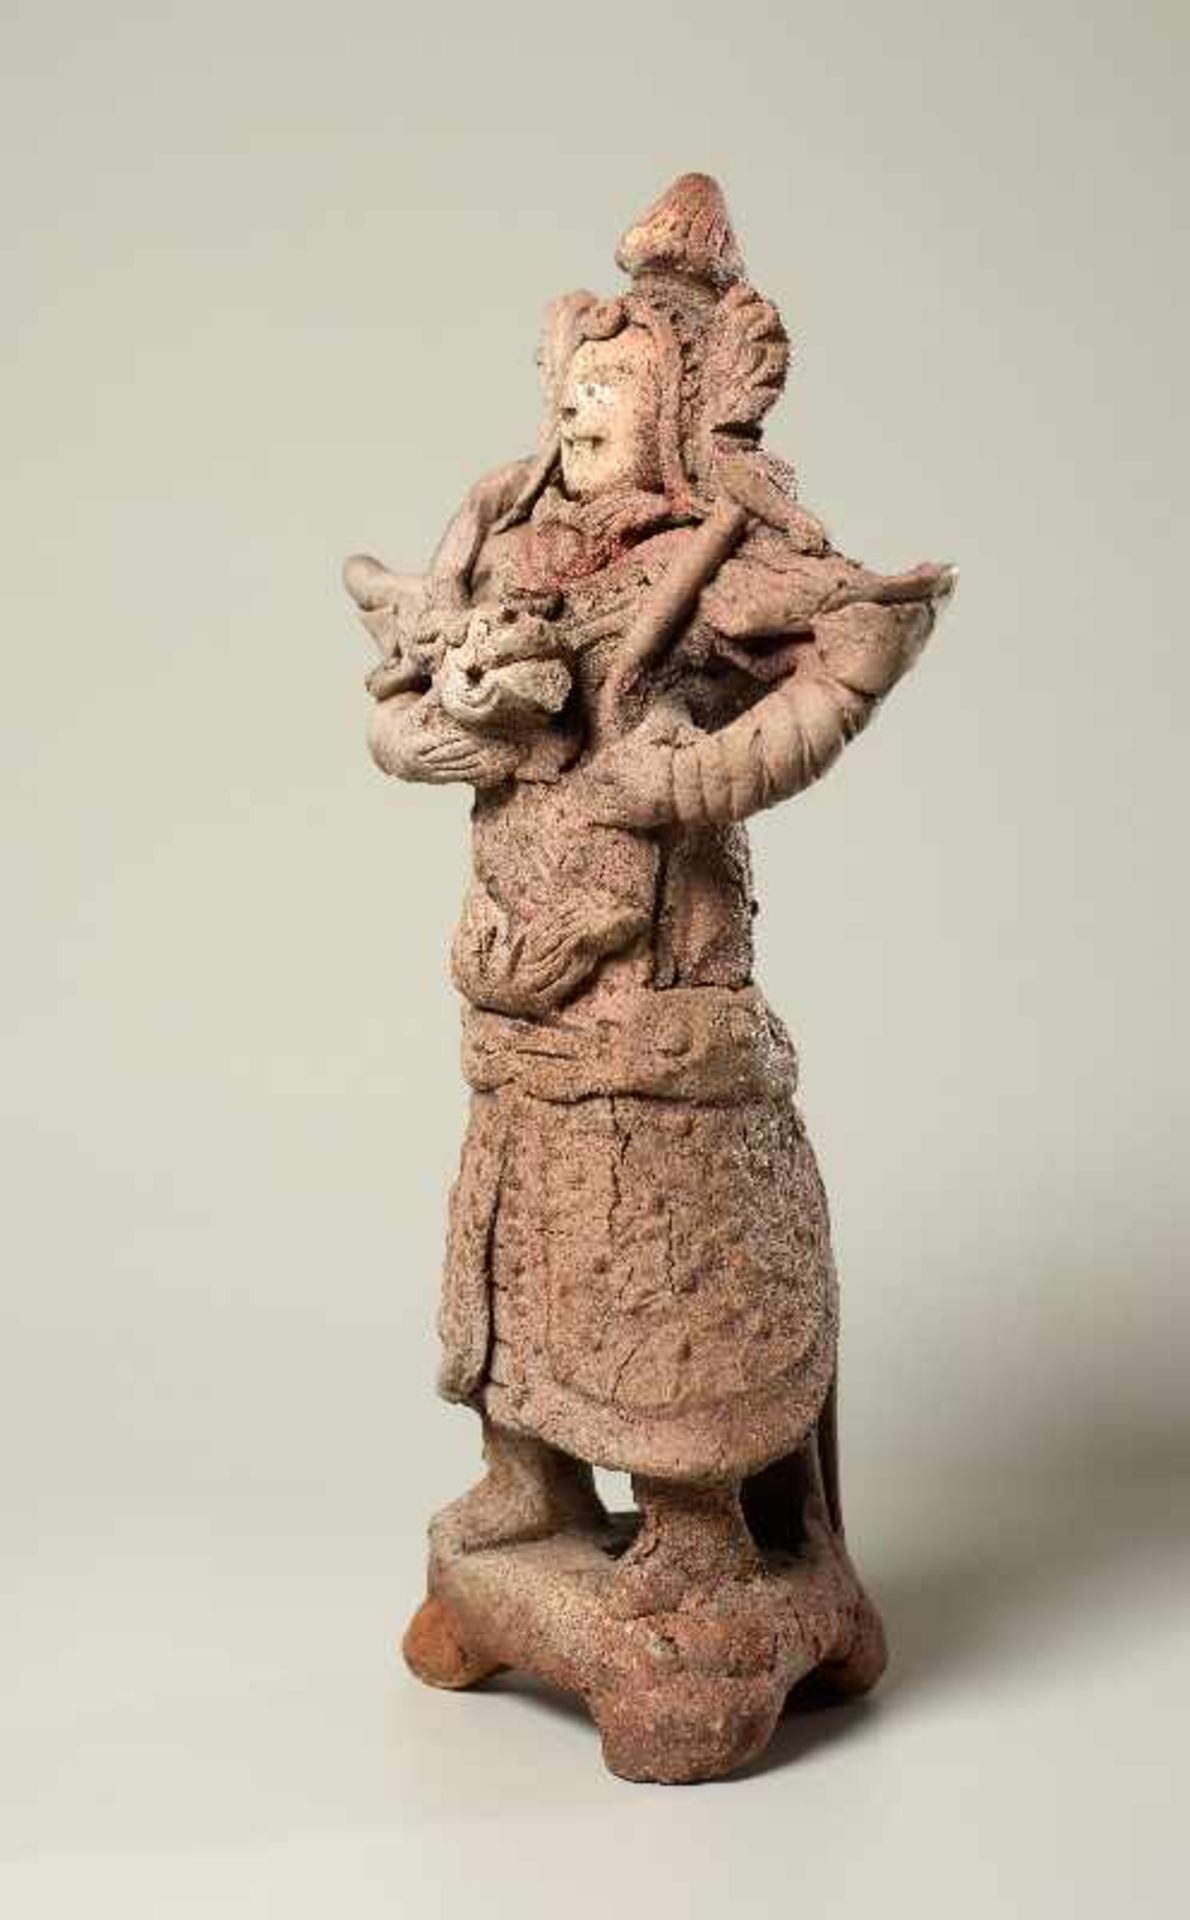 TRUTZIGER GRABWÄCHTER MIT SCHLANGE Terrakotta. China, Yuan-Dynastie (ca. 14. Jh.) Witzig geformt, - Image 4 of 6